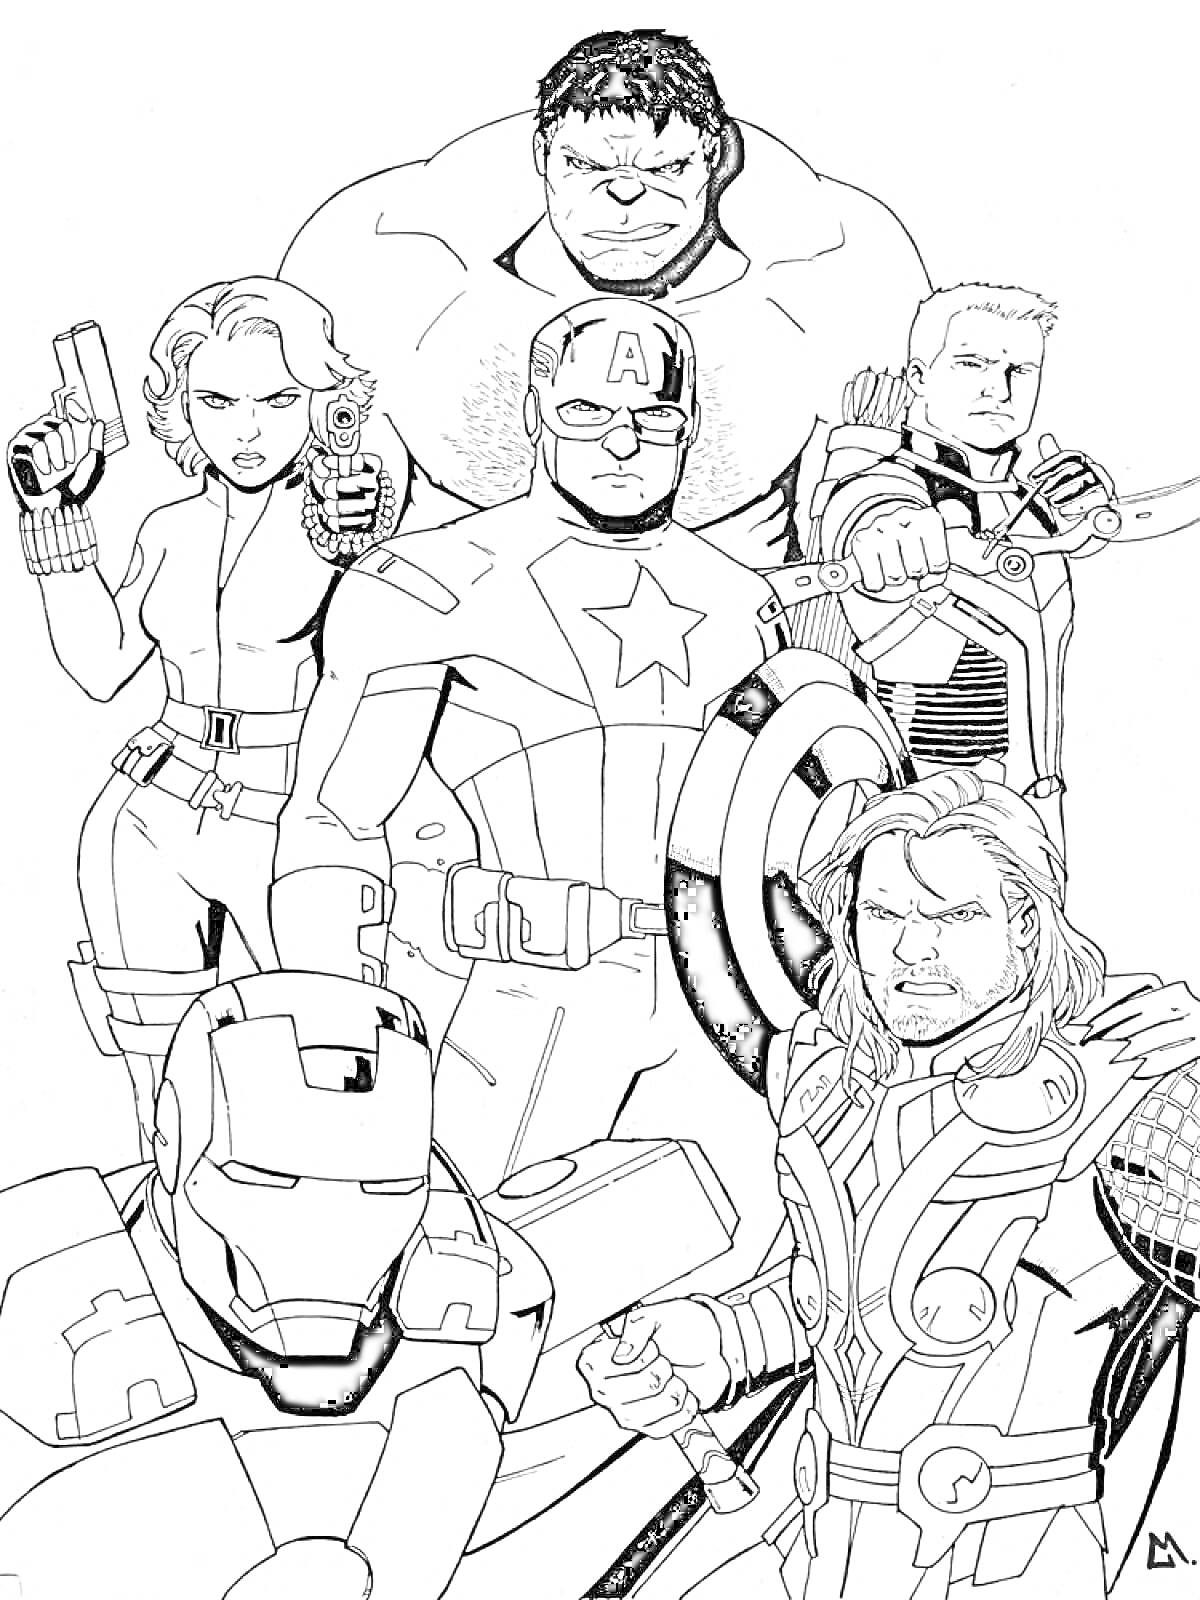 Герои Марвел - Железный Человек, Черная Вдова, Капитан Америка, Тор, Халк, Соколиный Глаз